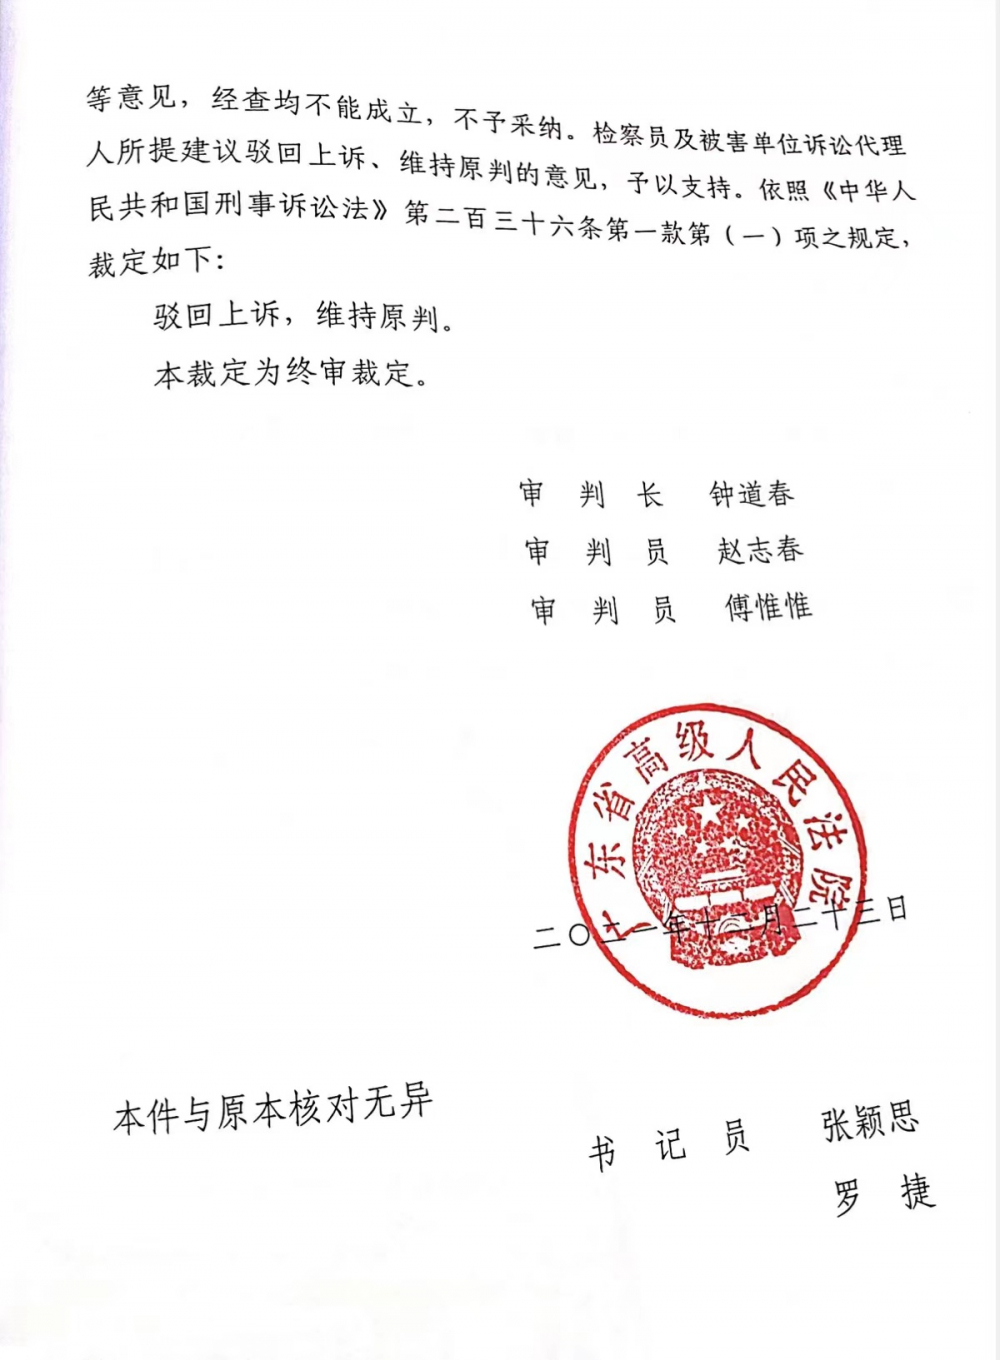 广东省高院对吴长江案重审二审作出“维持原判”的裁定